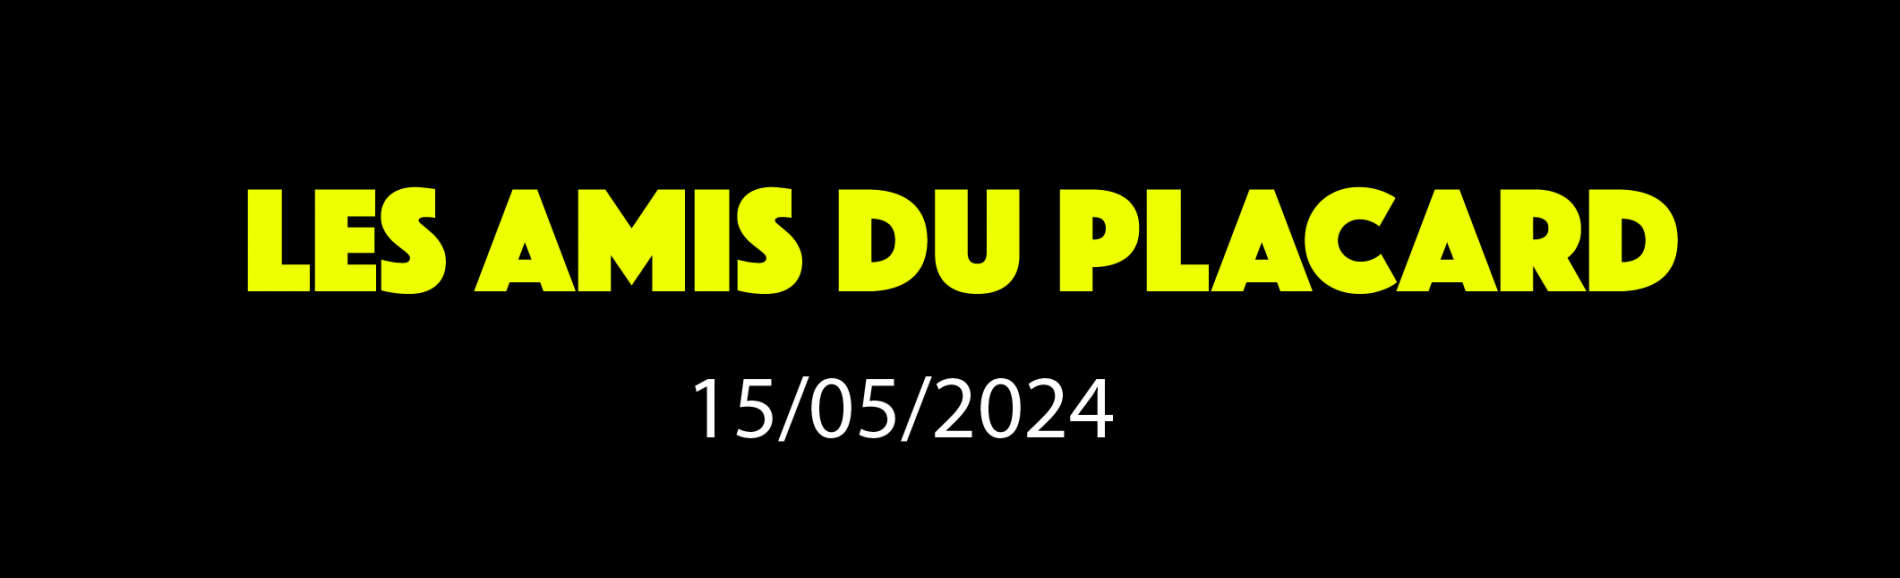 LES AMIS DU PLACARD - 15/04/2024